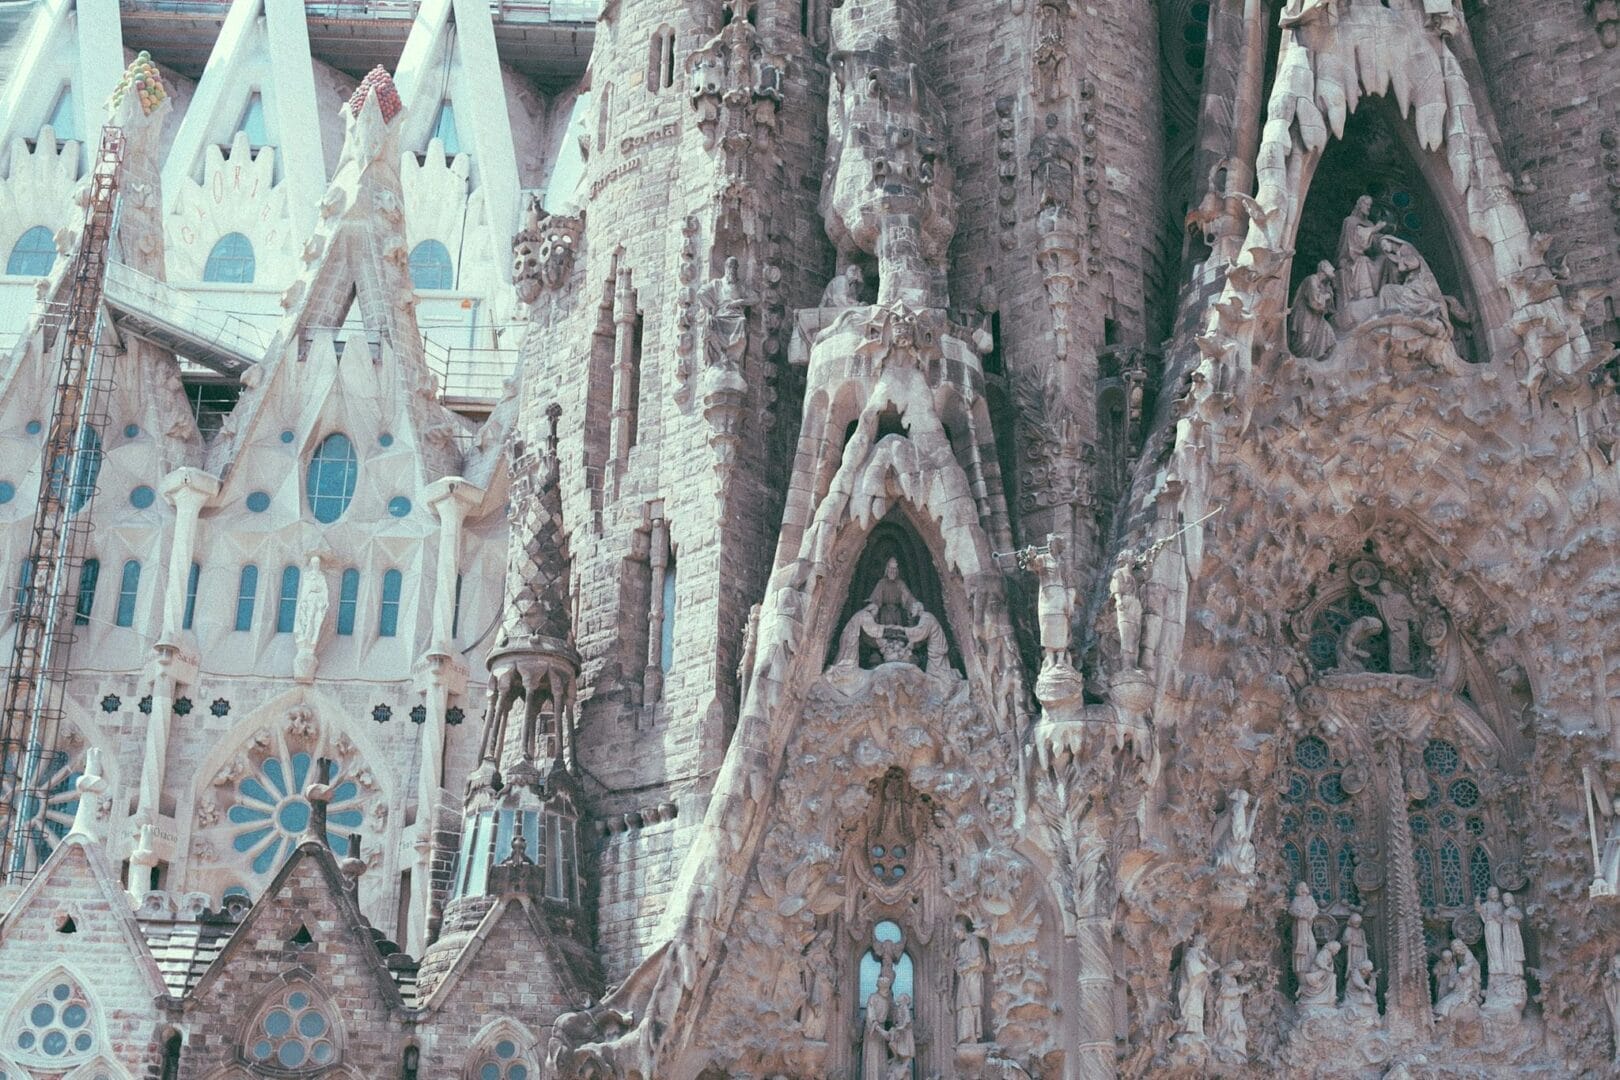 Catedral católica de estilo gótico con esculturas y detalles ornamentales